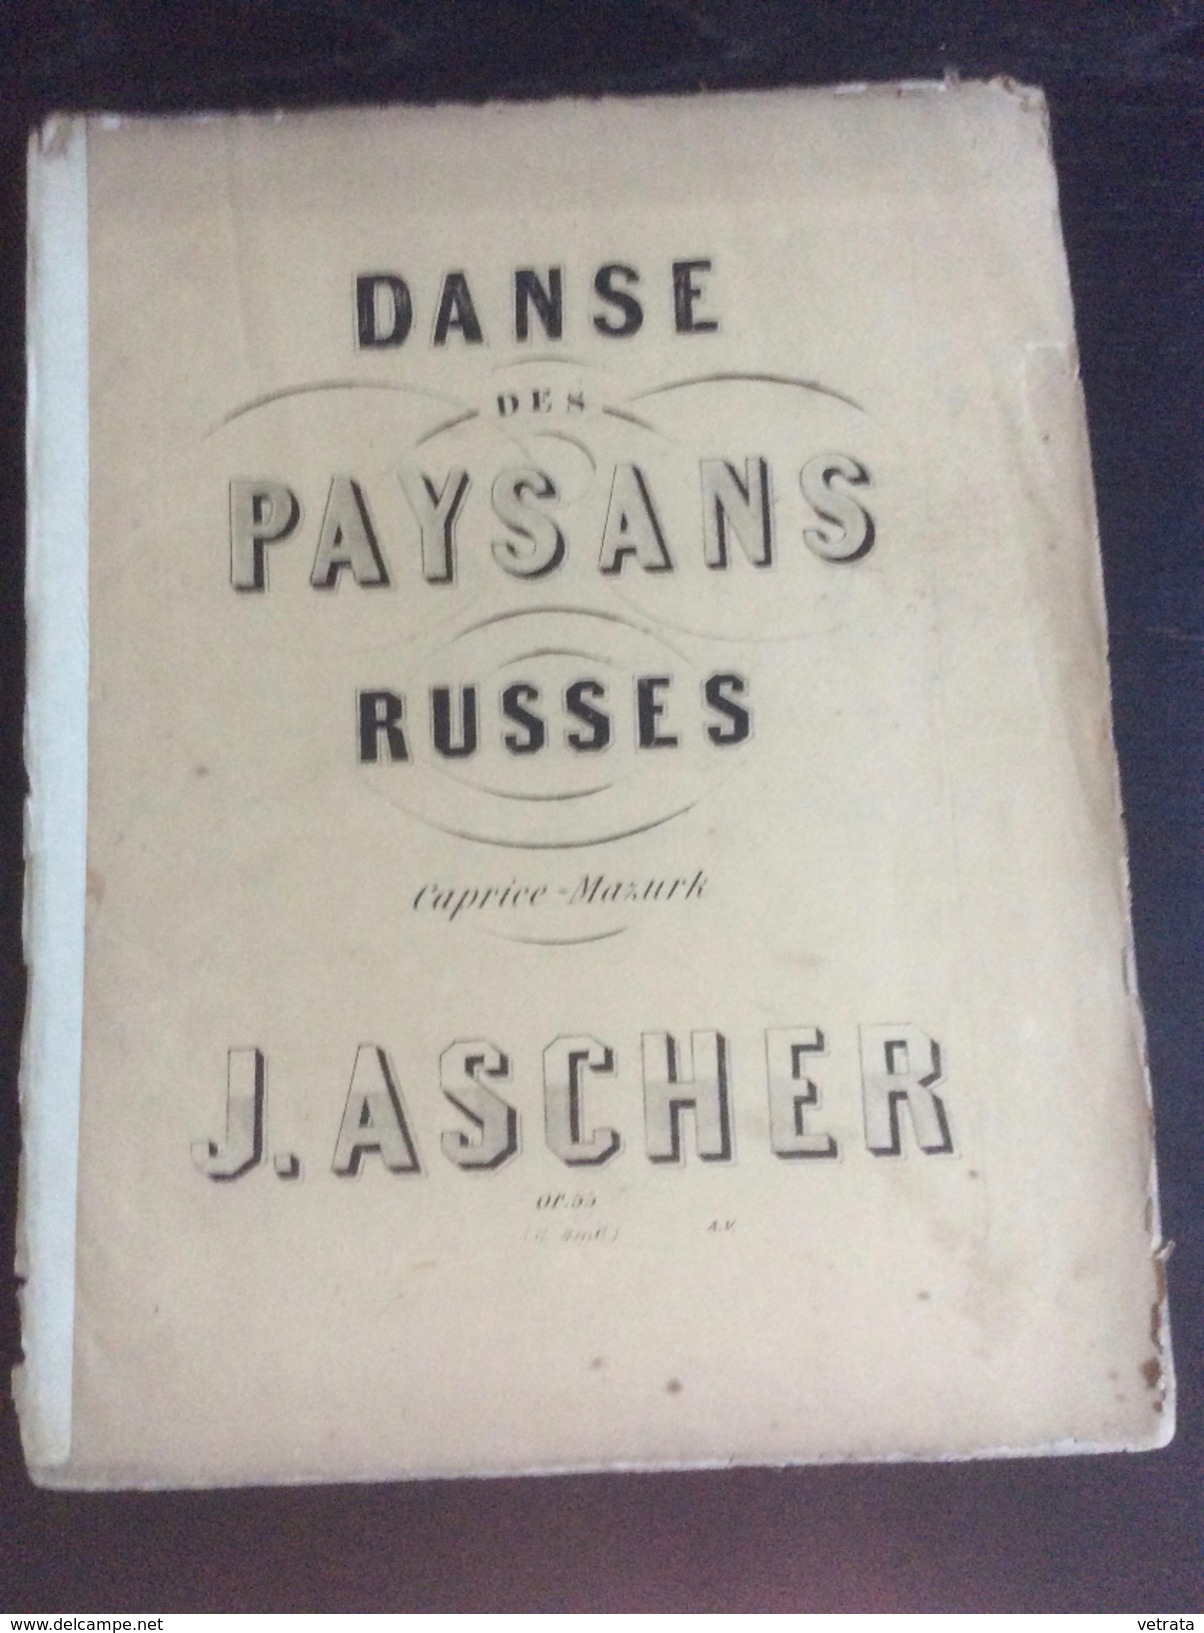 Partition : Danse Des Paysans Russes, J. Ascher (Lemoine Ed.- 5 Feuillets - Début Du Siècle Dernier - état Moyen) - Opern